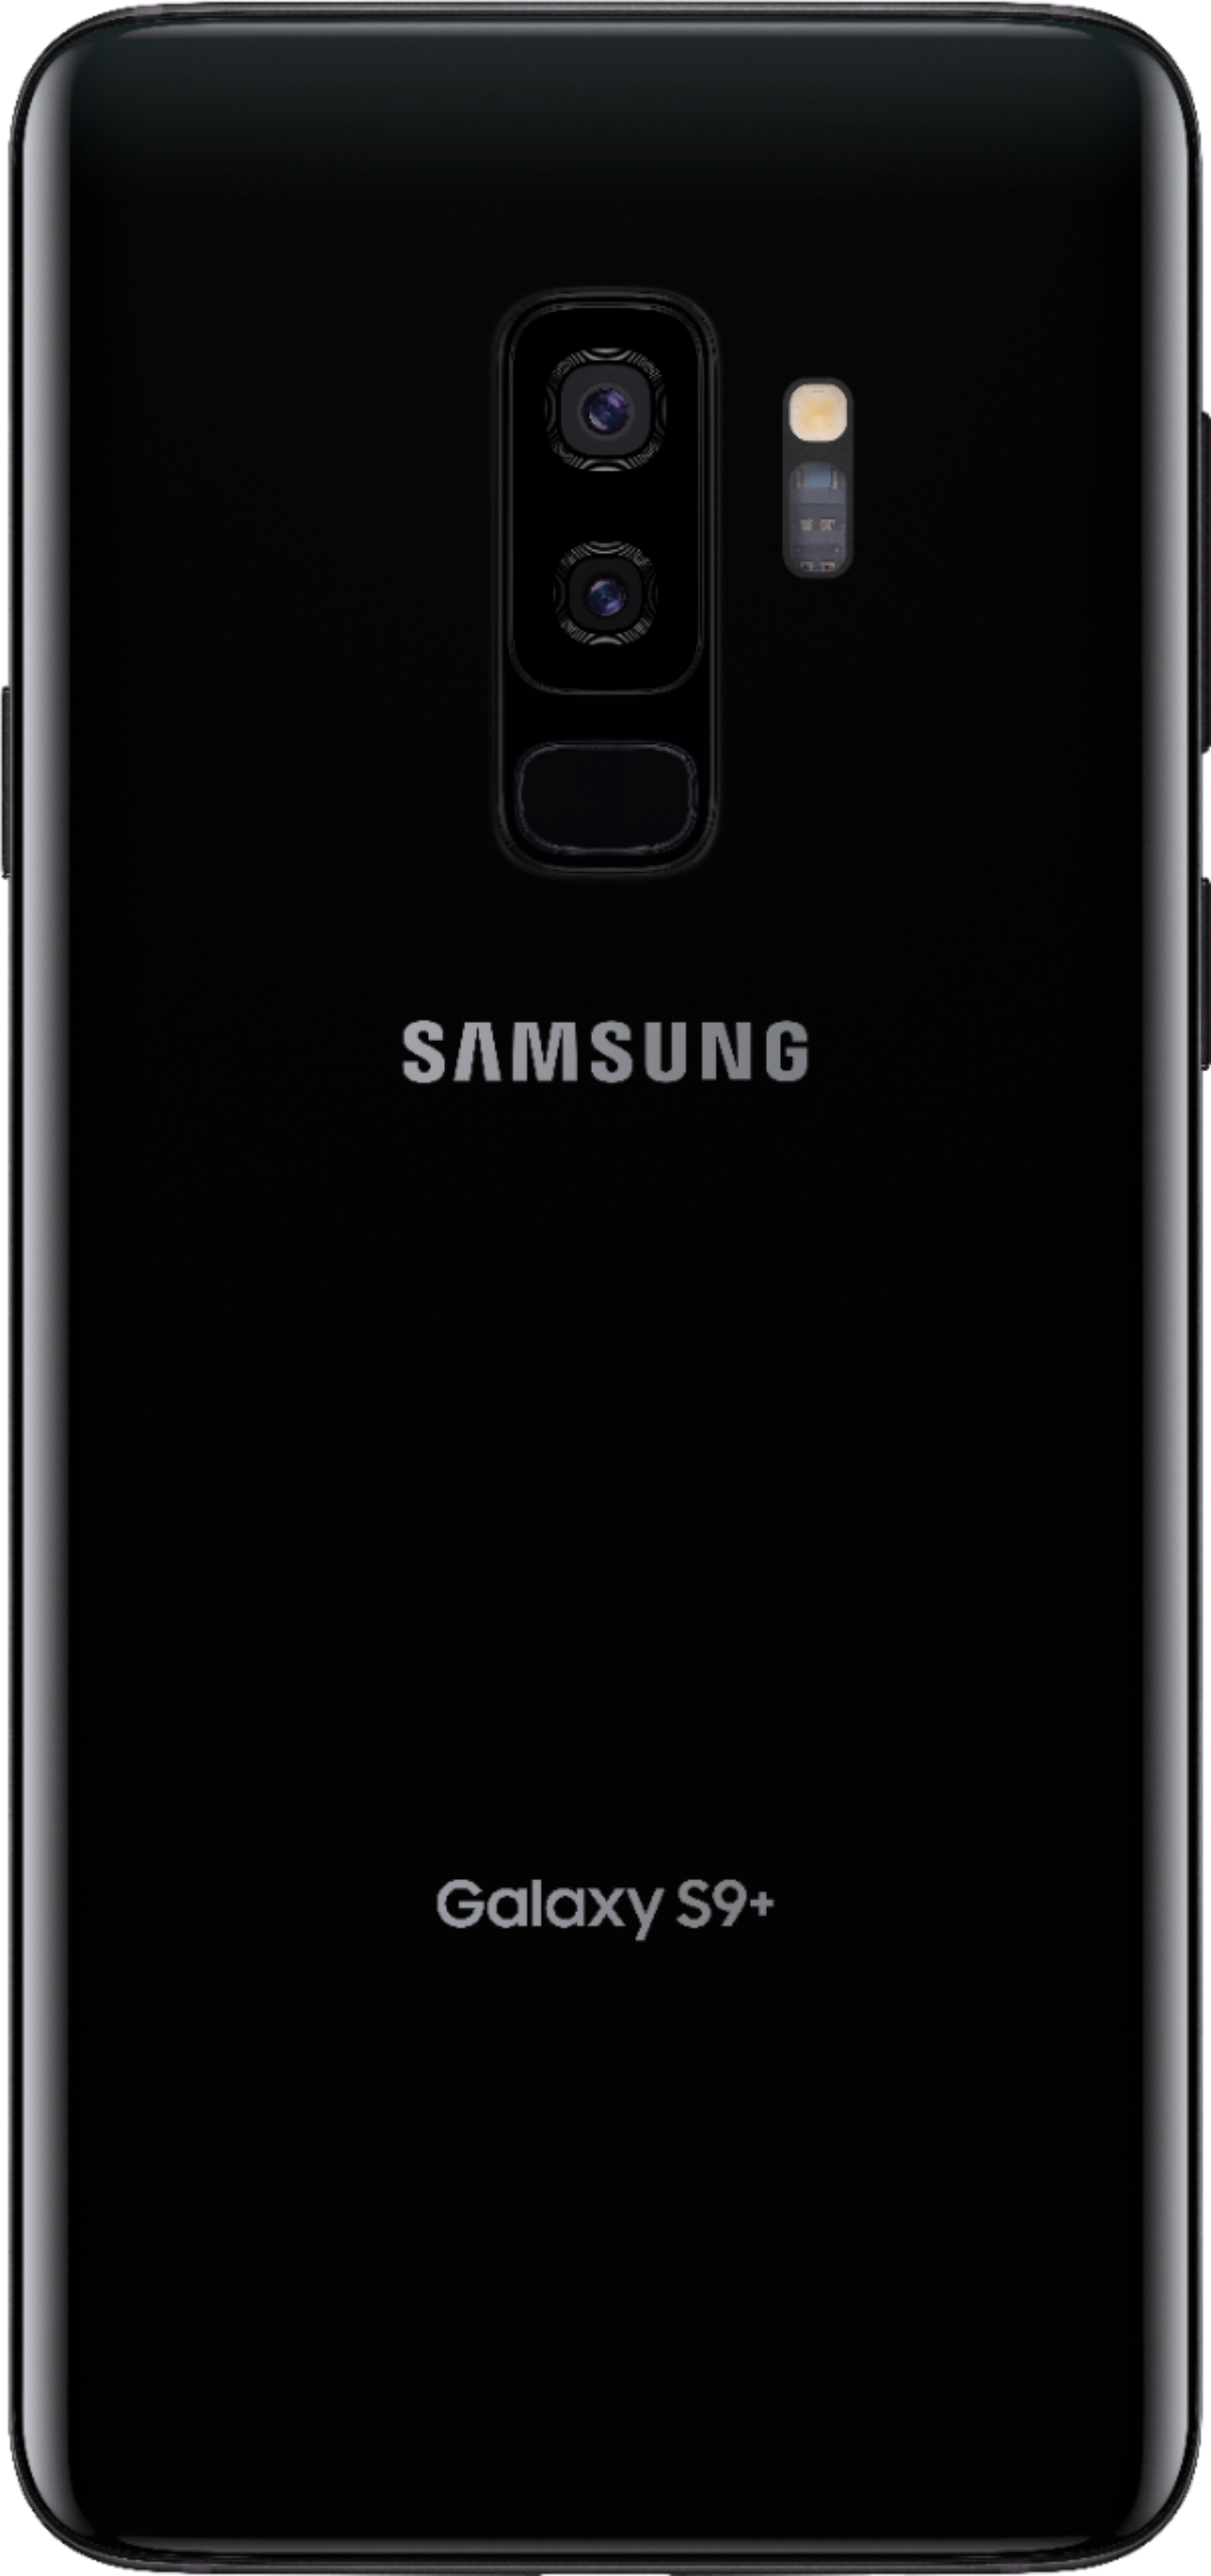 スマートフォン/携帯電話 スマートフォン本体 2022新作 Pre Autumn Galaxy S9+ Midnight Black 64 GB docomo 